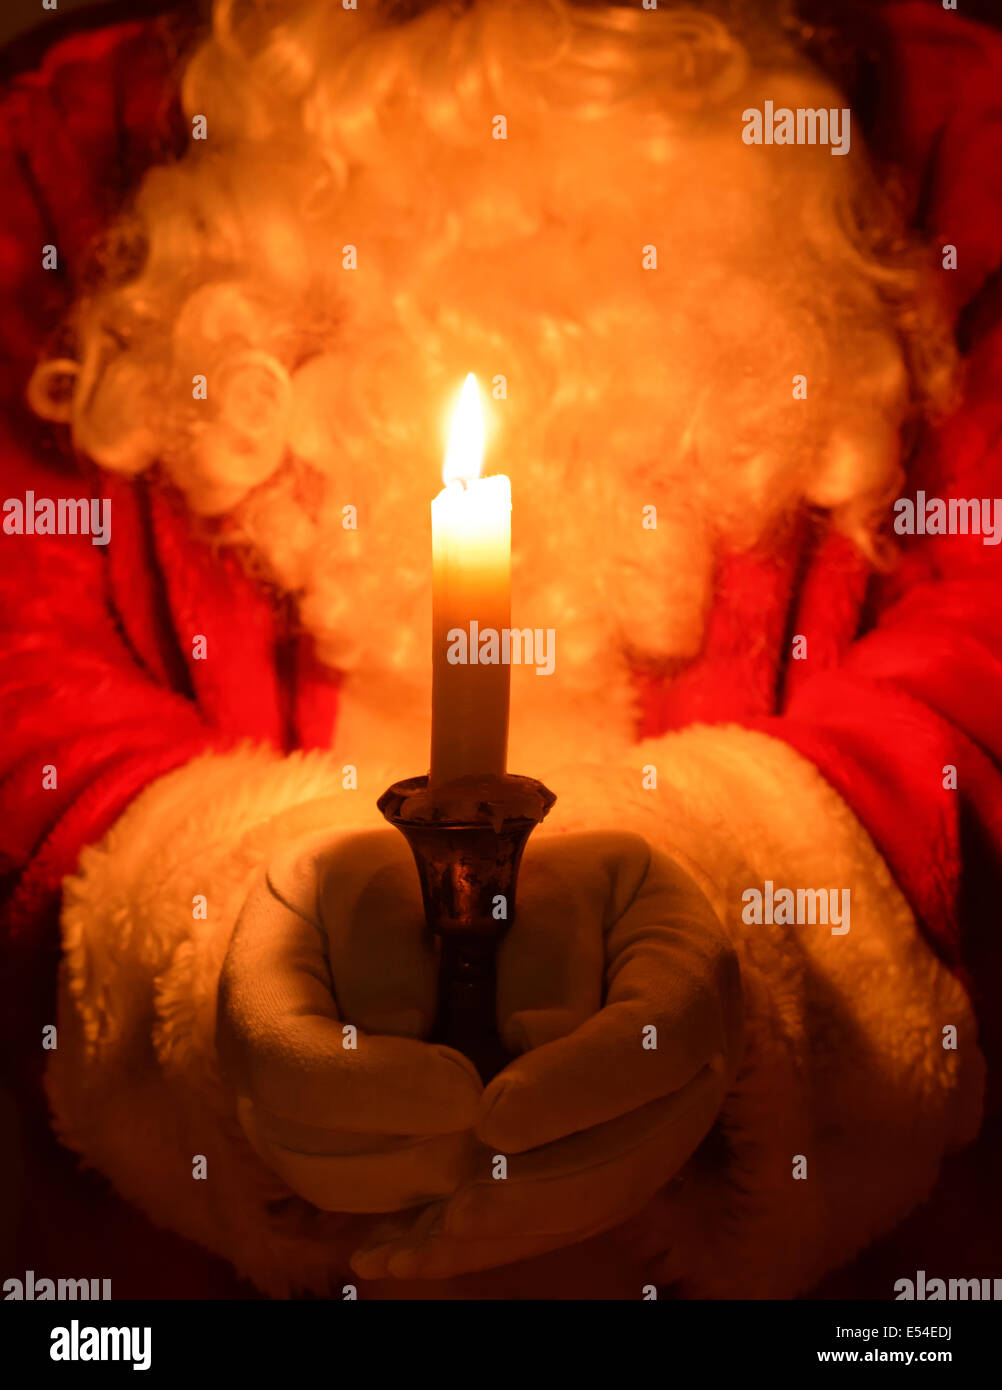 Weihnachtsmann hielt eine brennende Kerze in einem antiken Silber chamberstick Stockfoto